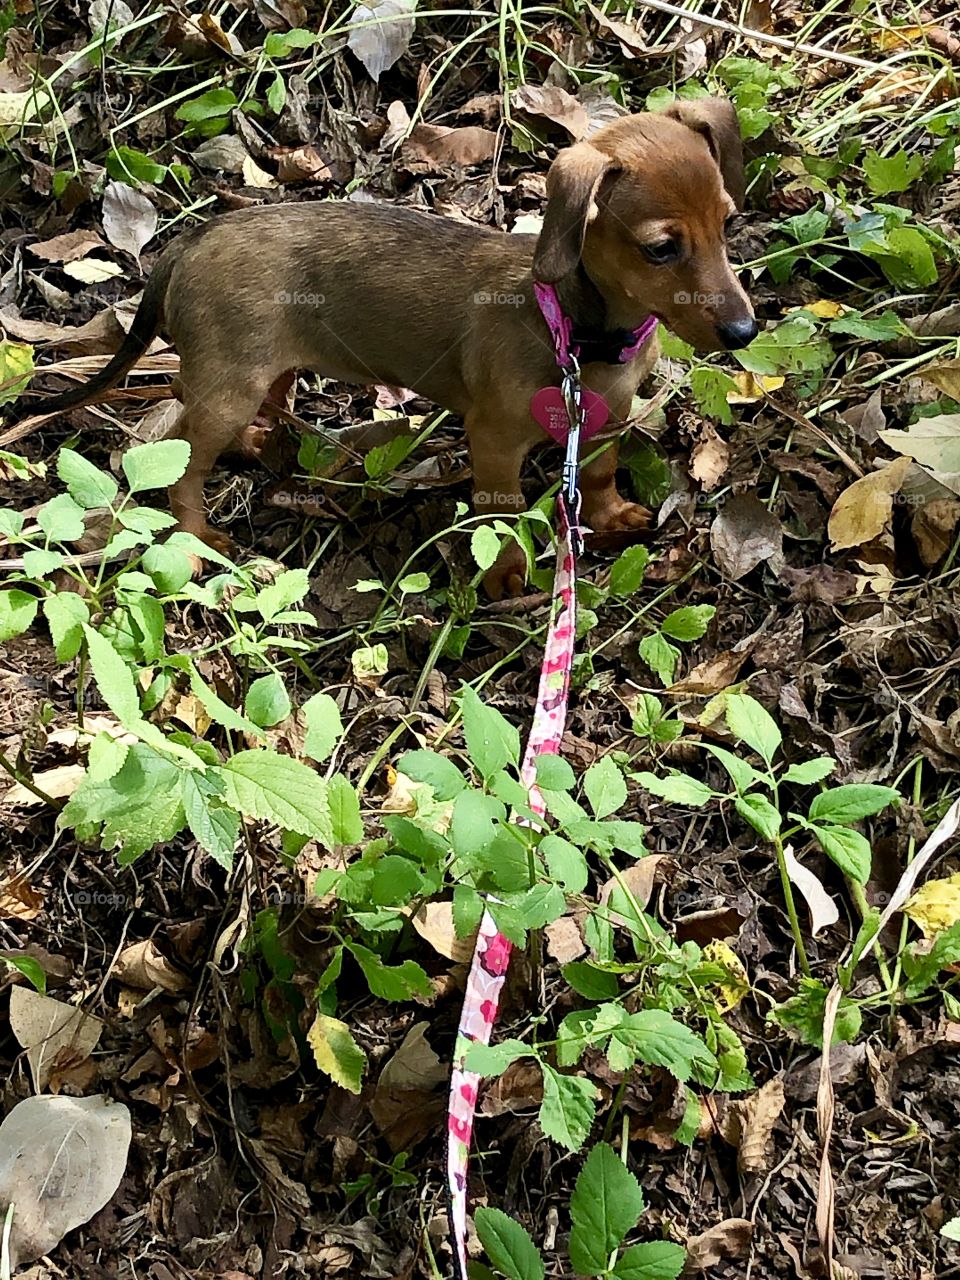 Dachshund puppy in grass 